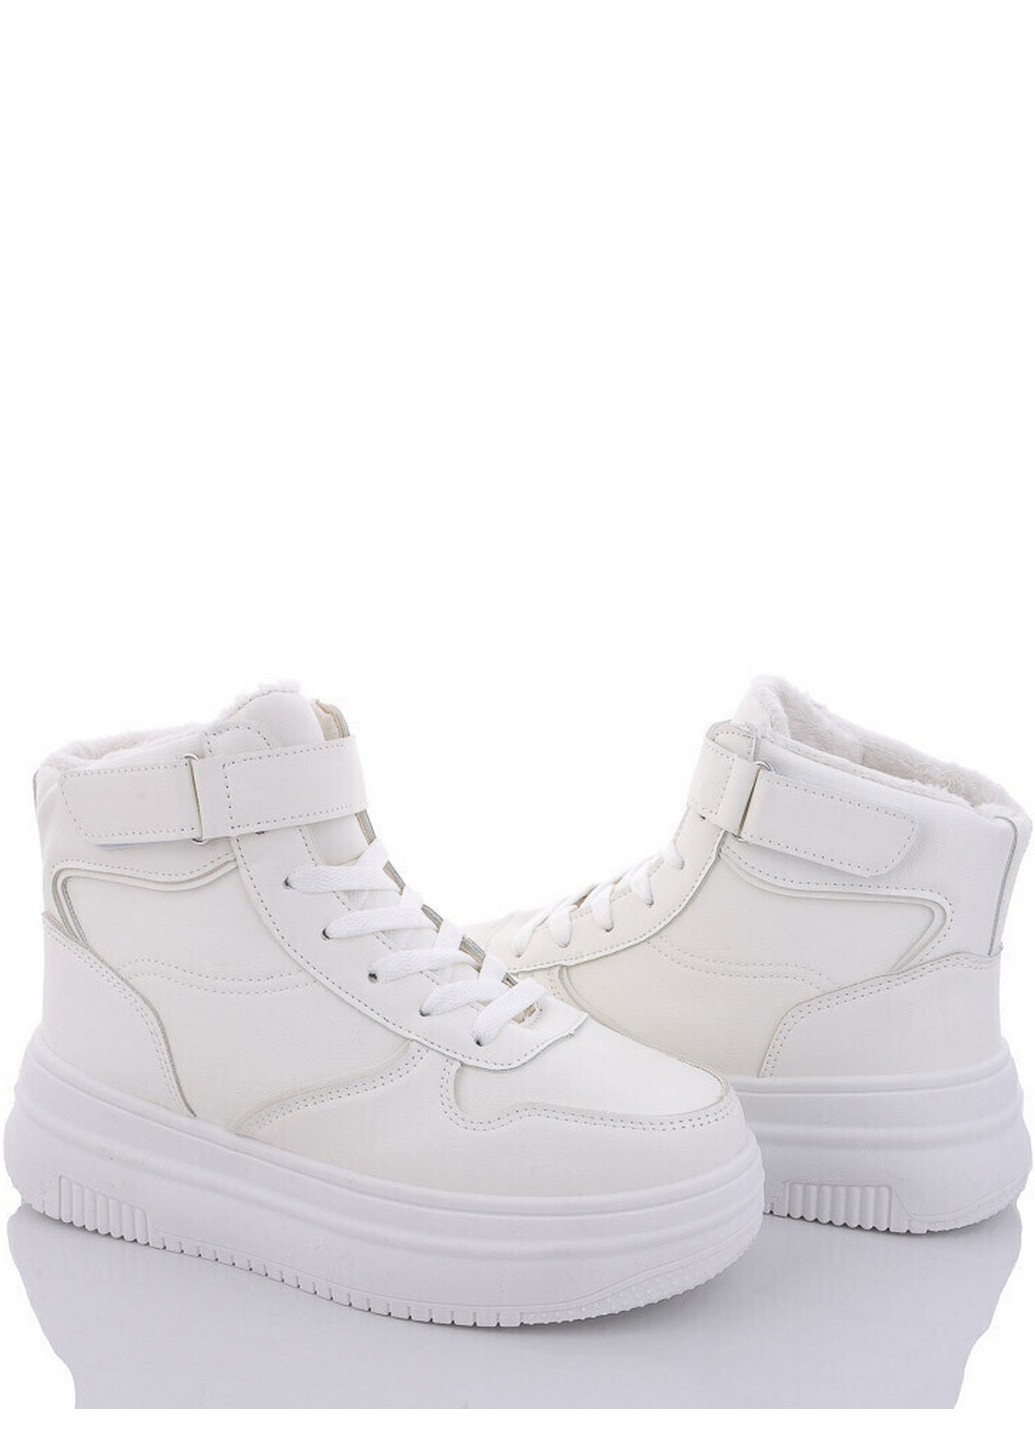 Белые зимние зимние ботинки m04-2 Stilli